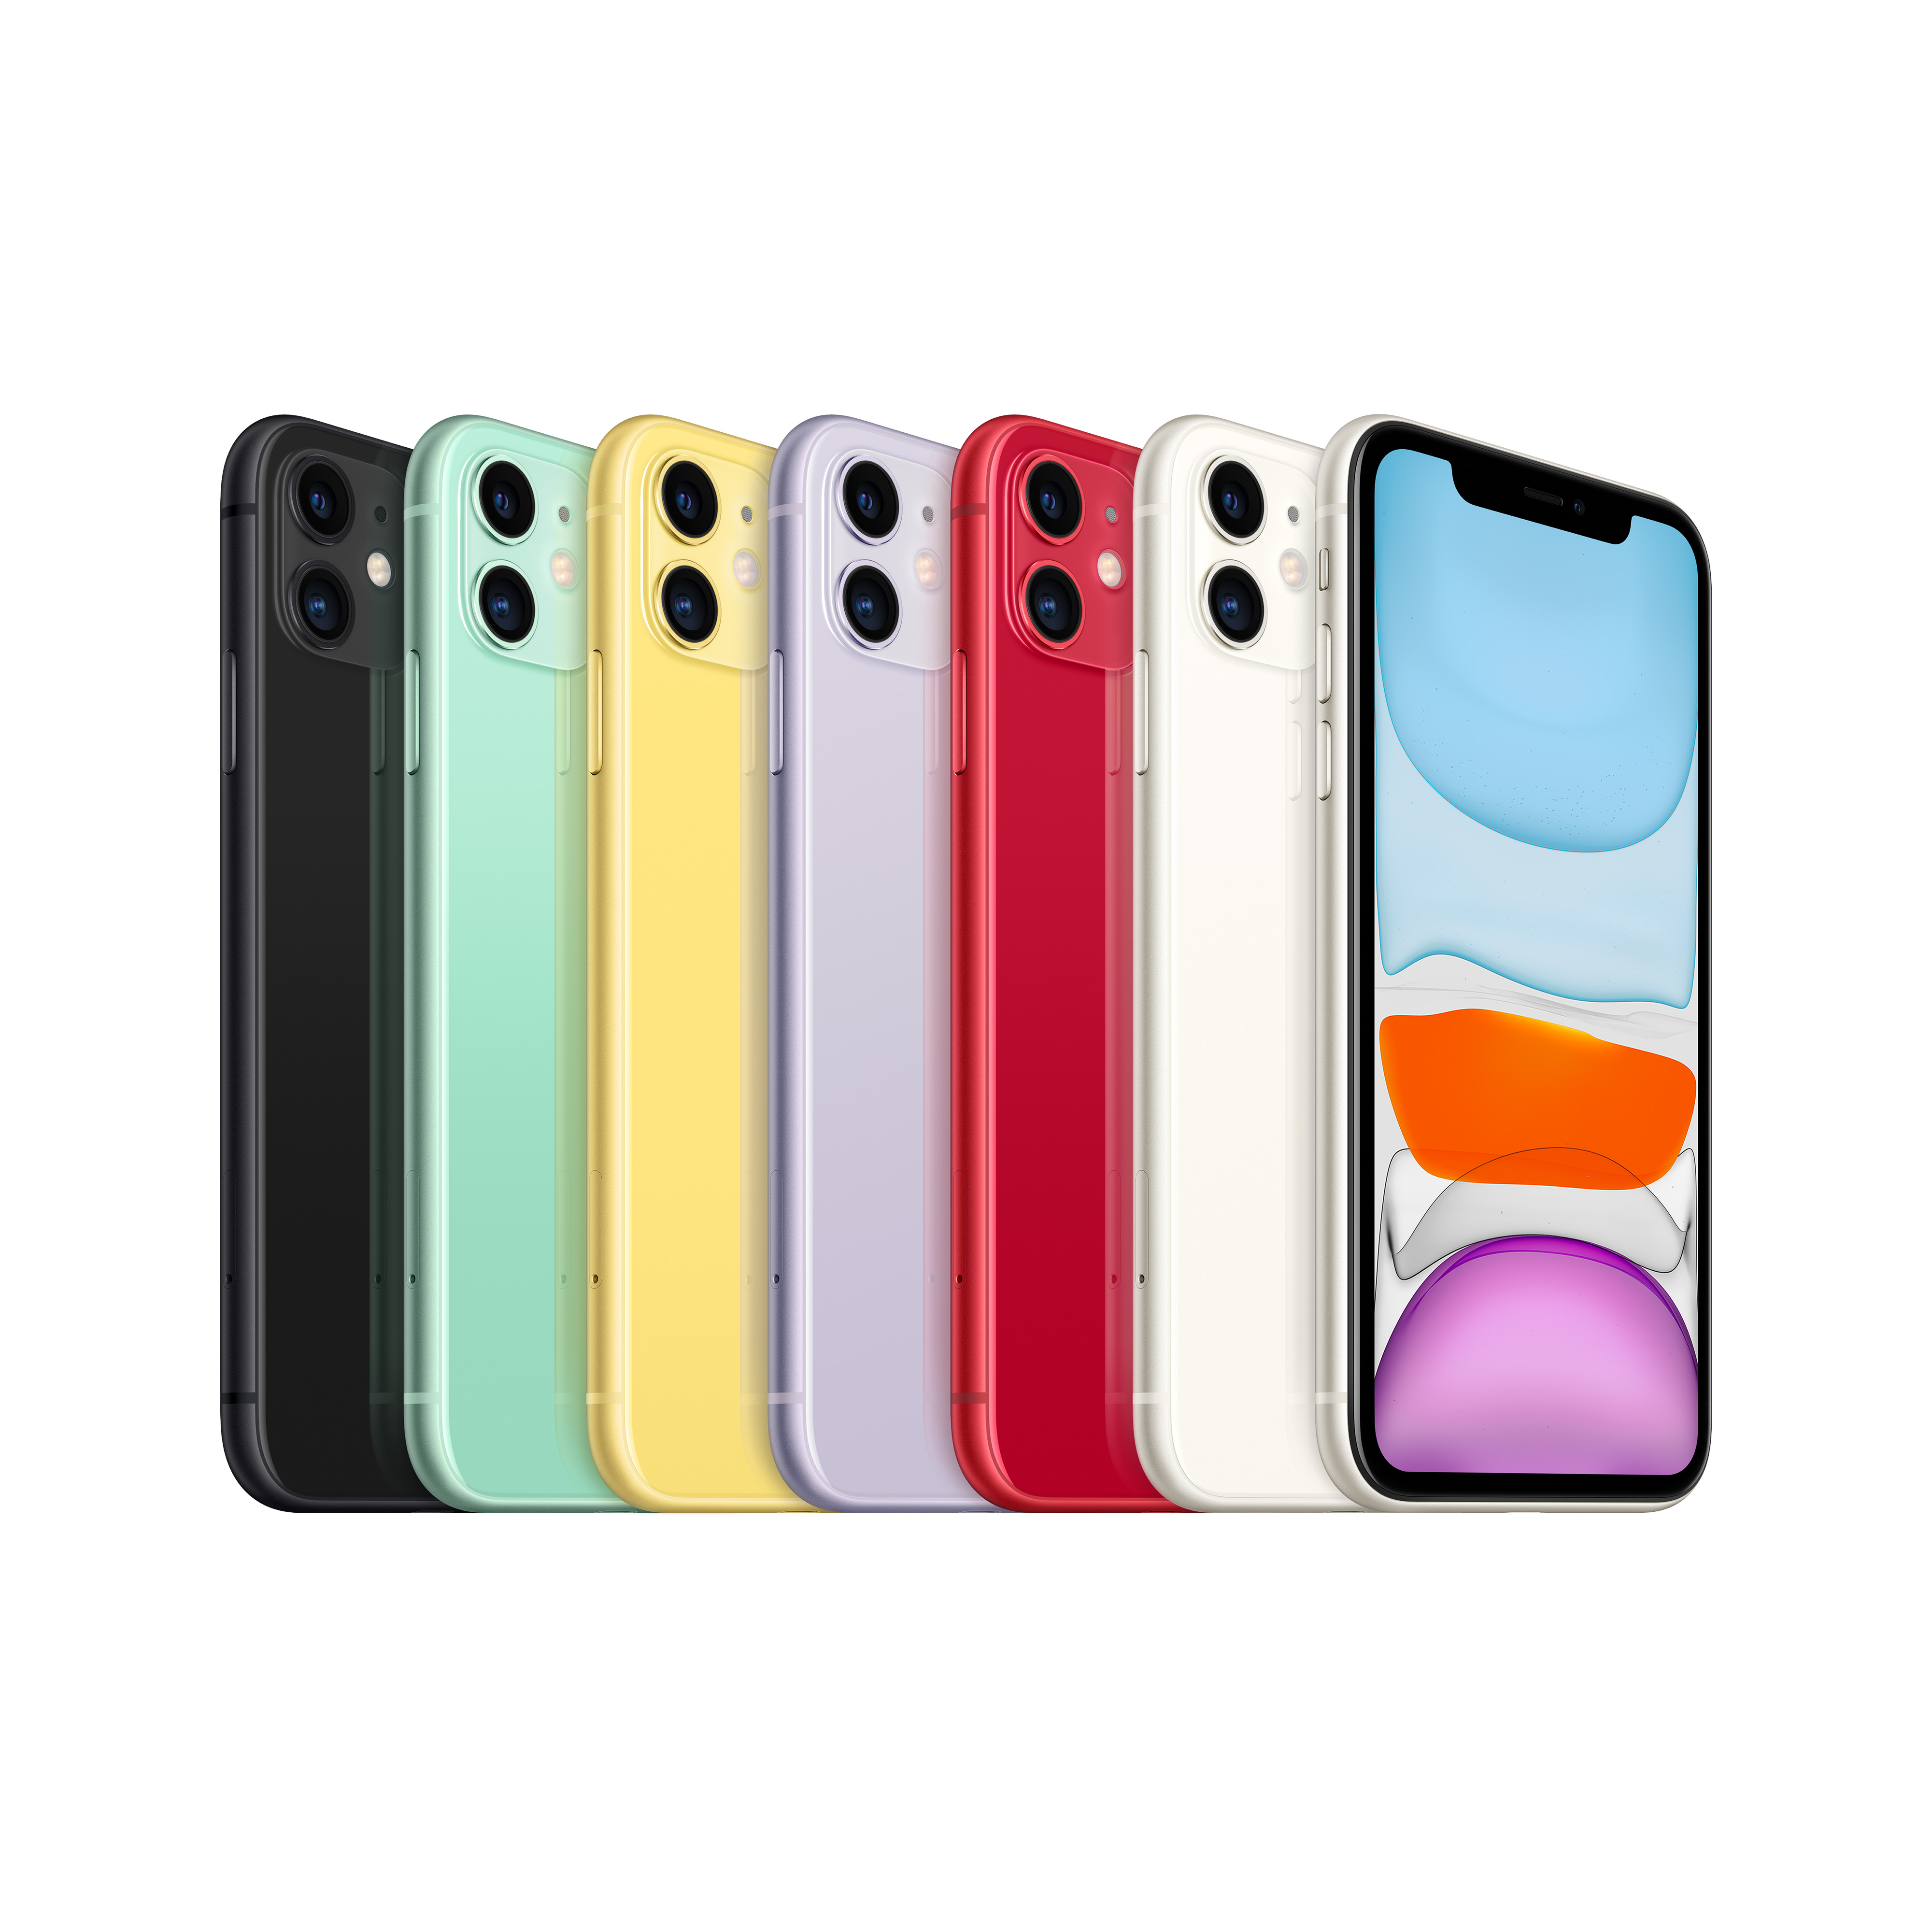 Фото — Apple iPhone 11, 64 ГБ, фиолетовый, новая комплектация